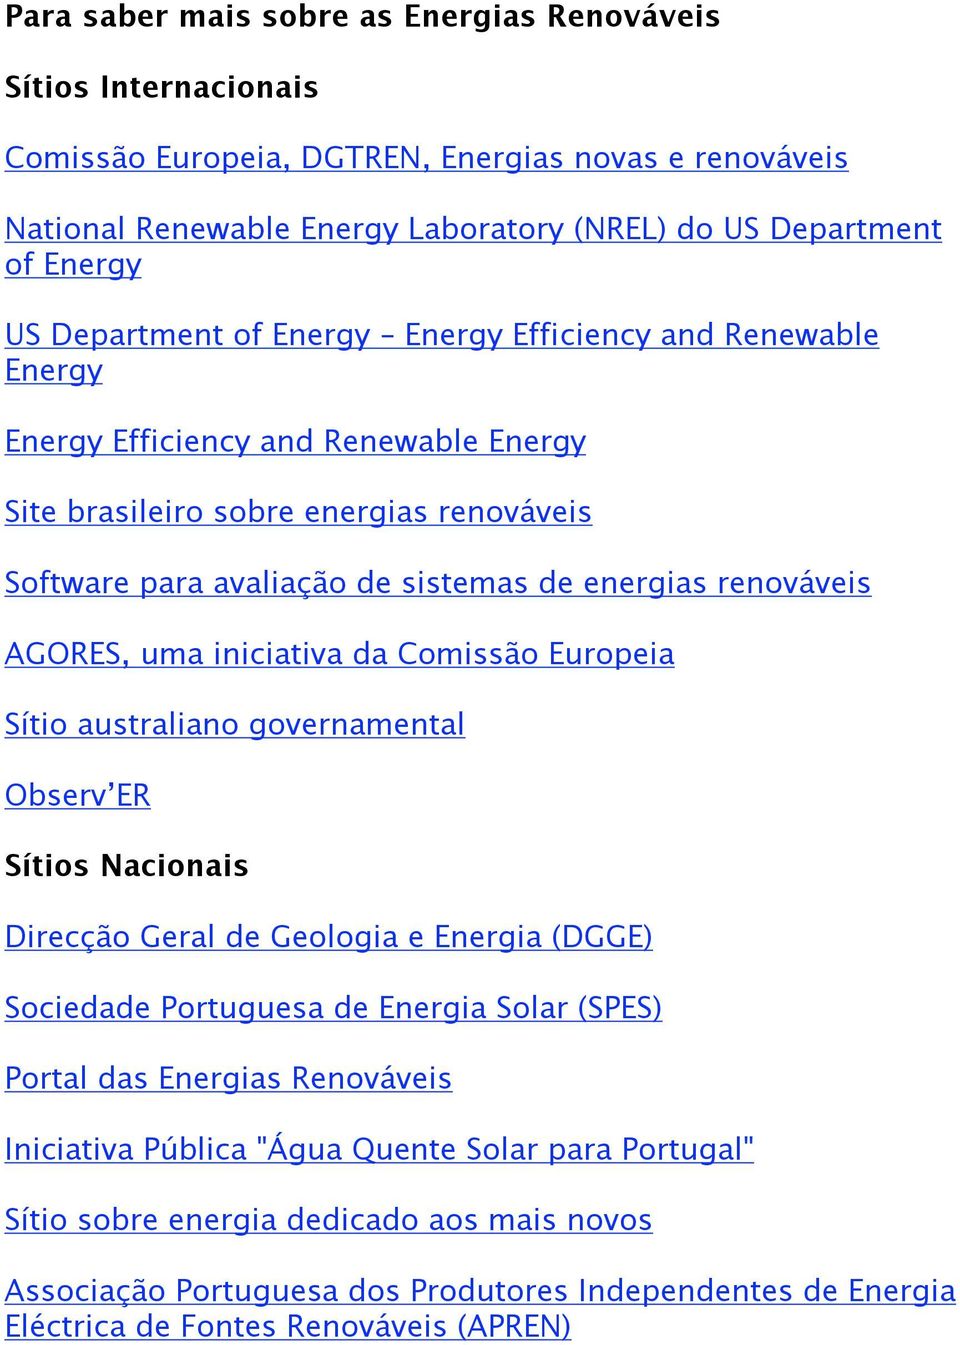 AGORES, uma iniciativa da Comissão Europeia Sítio australiano governamental Observ ER Sítios Nacionais Direcção Geral de Geologia e Energia (DGGE) Sociedade Portuguesa de Energia Solar (SPES) Portal